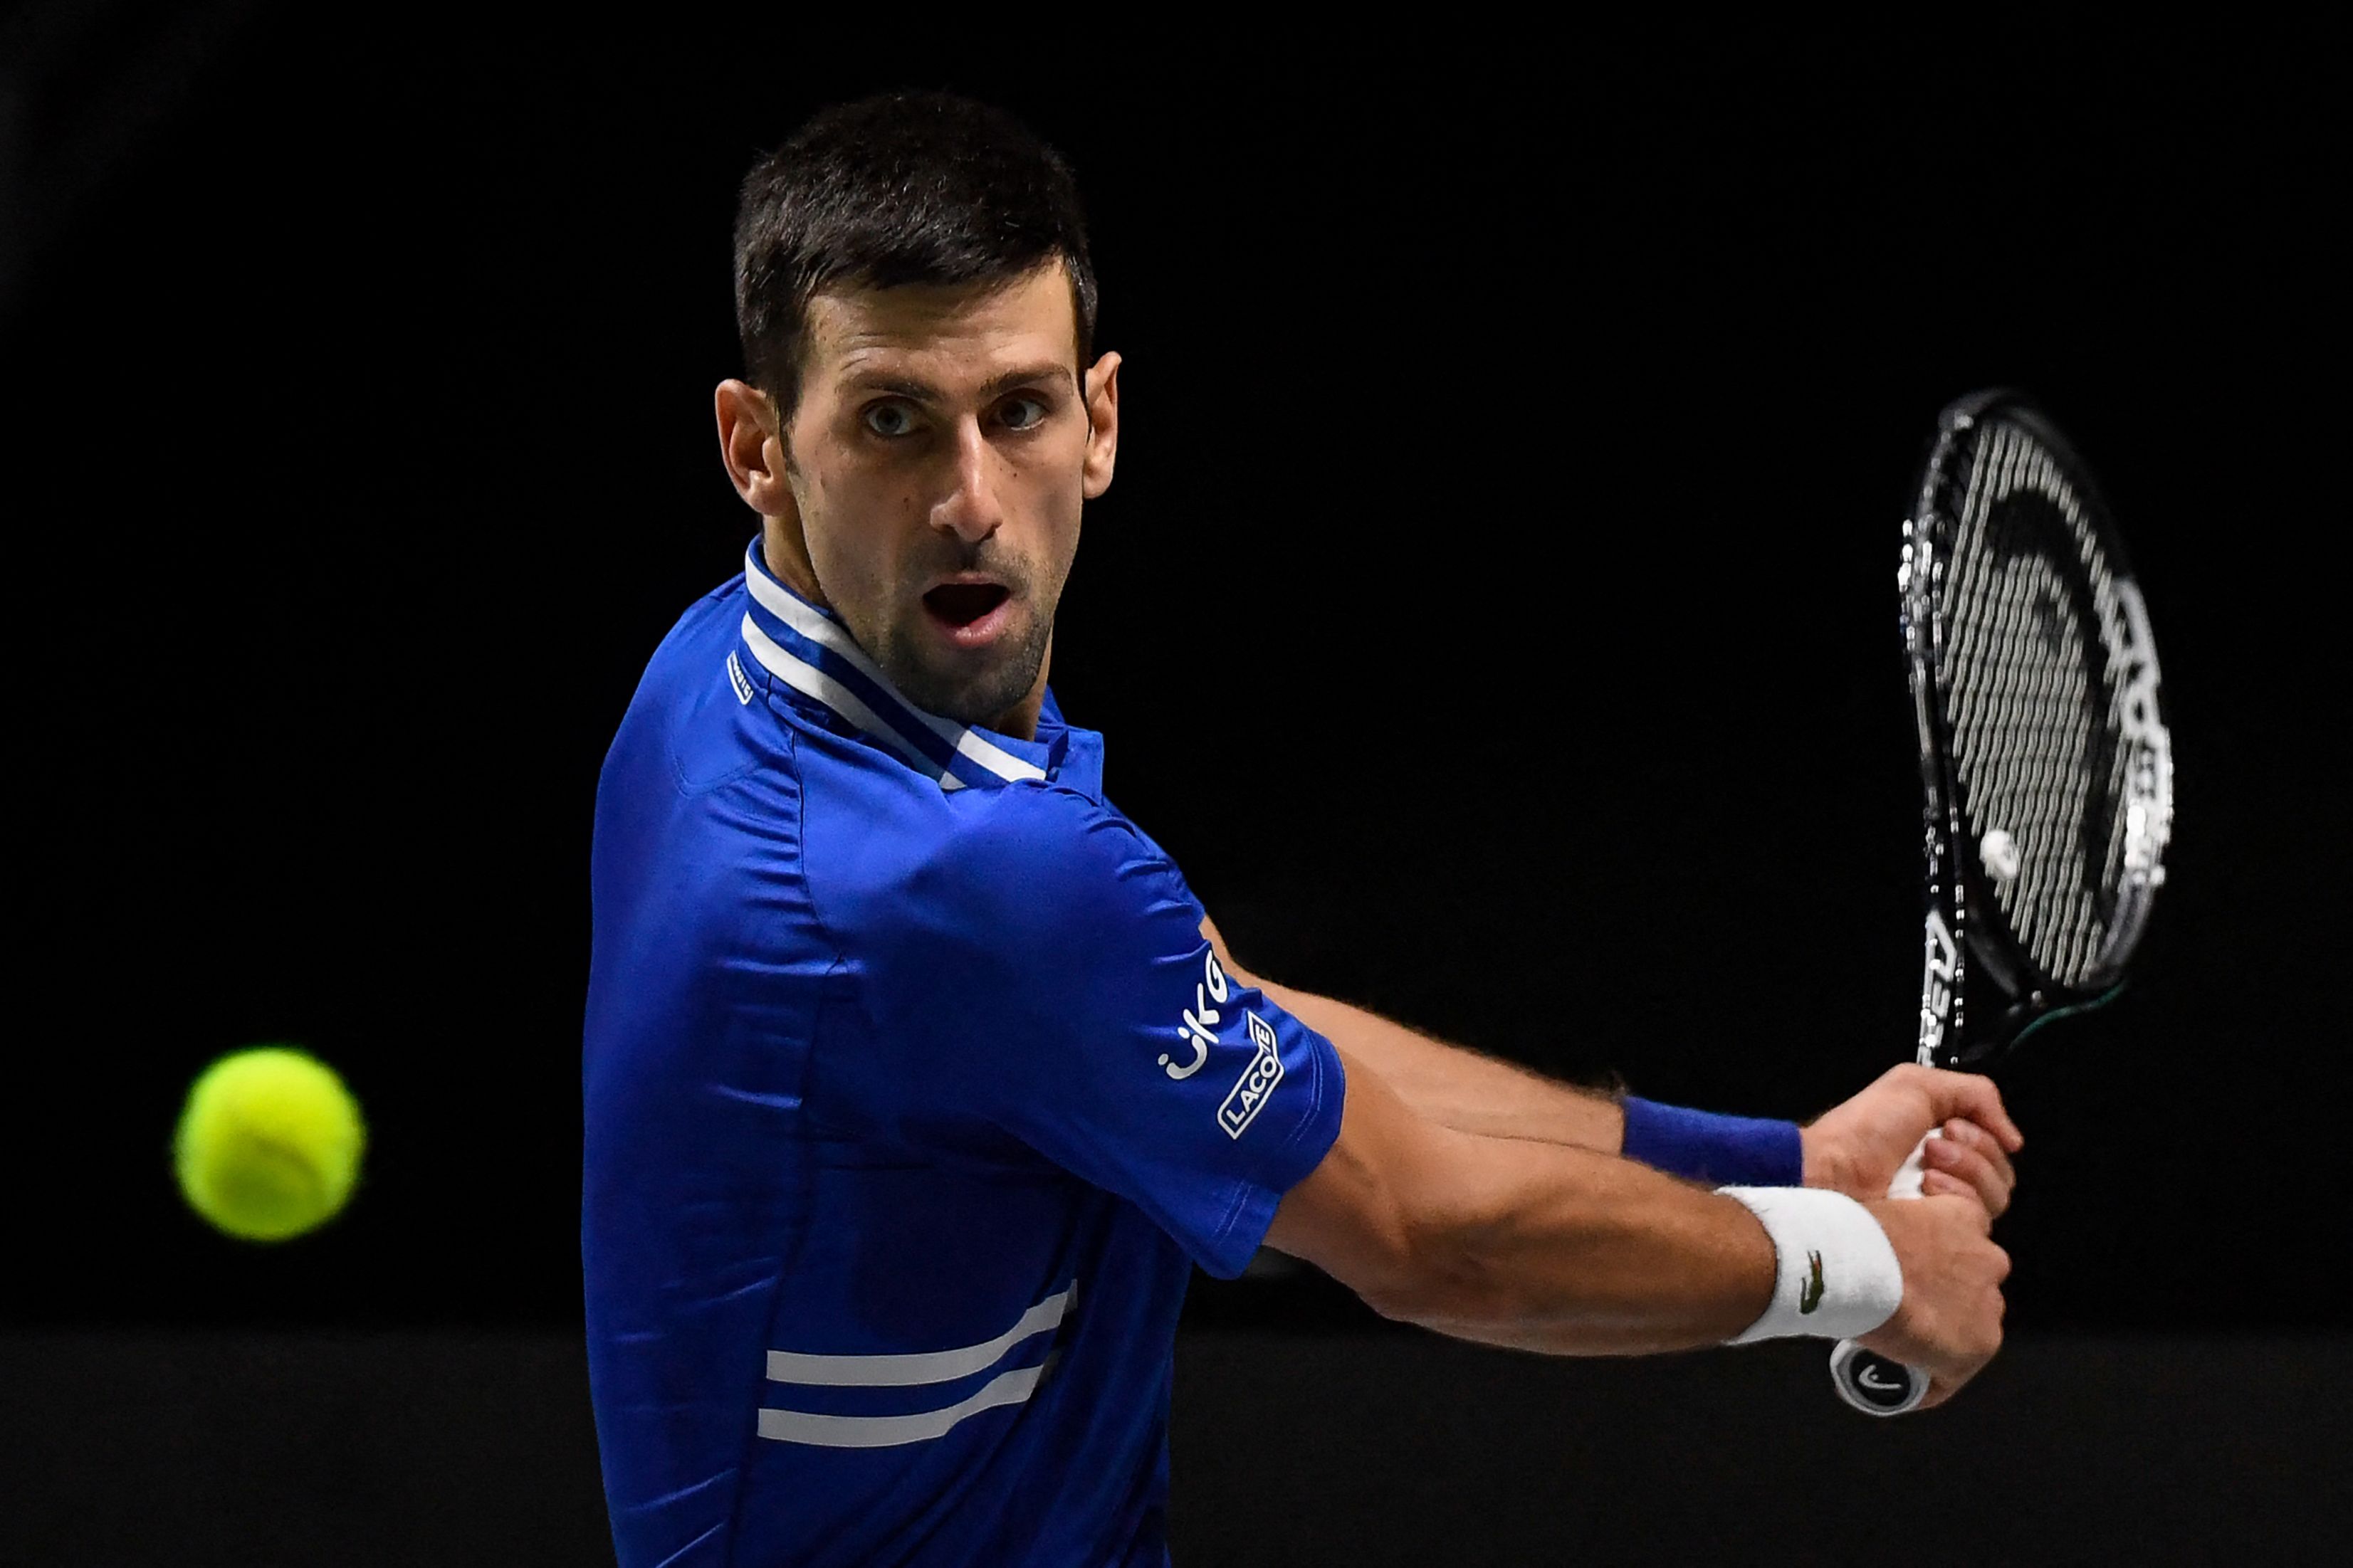 Novak Djokovic espera defender el título en Australia. (Foto Prensa Libre: AFP)